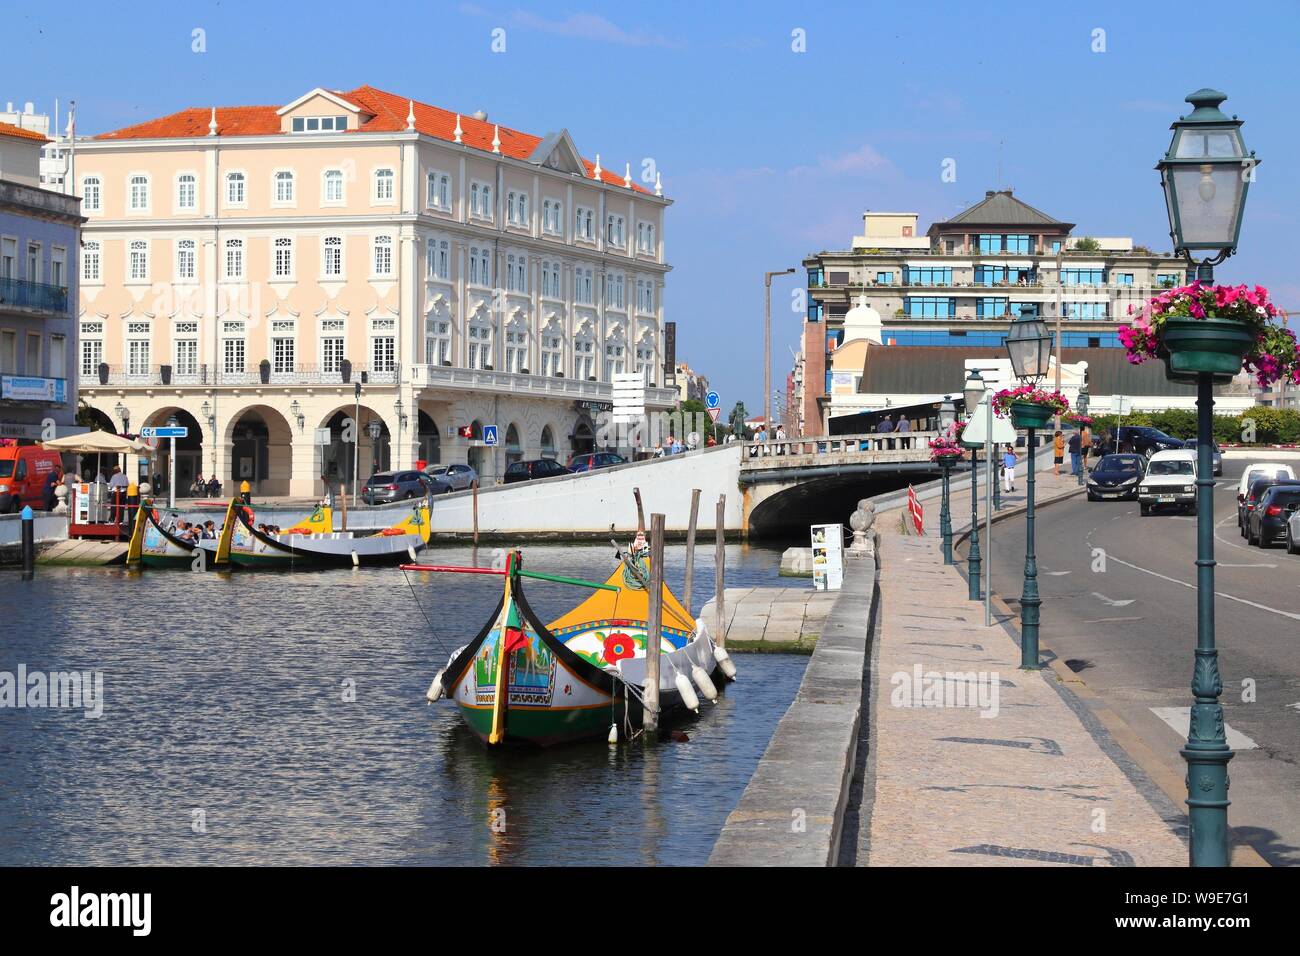 AVEIRO, Portogallo - 23 Maggio 2018: Aveiro canal gondola-style di barche in Portogallo. Aveiro è conosciuta come la Venezia del Portogallo a causa dei suoi canali. Foto Stock